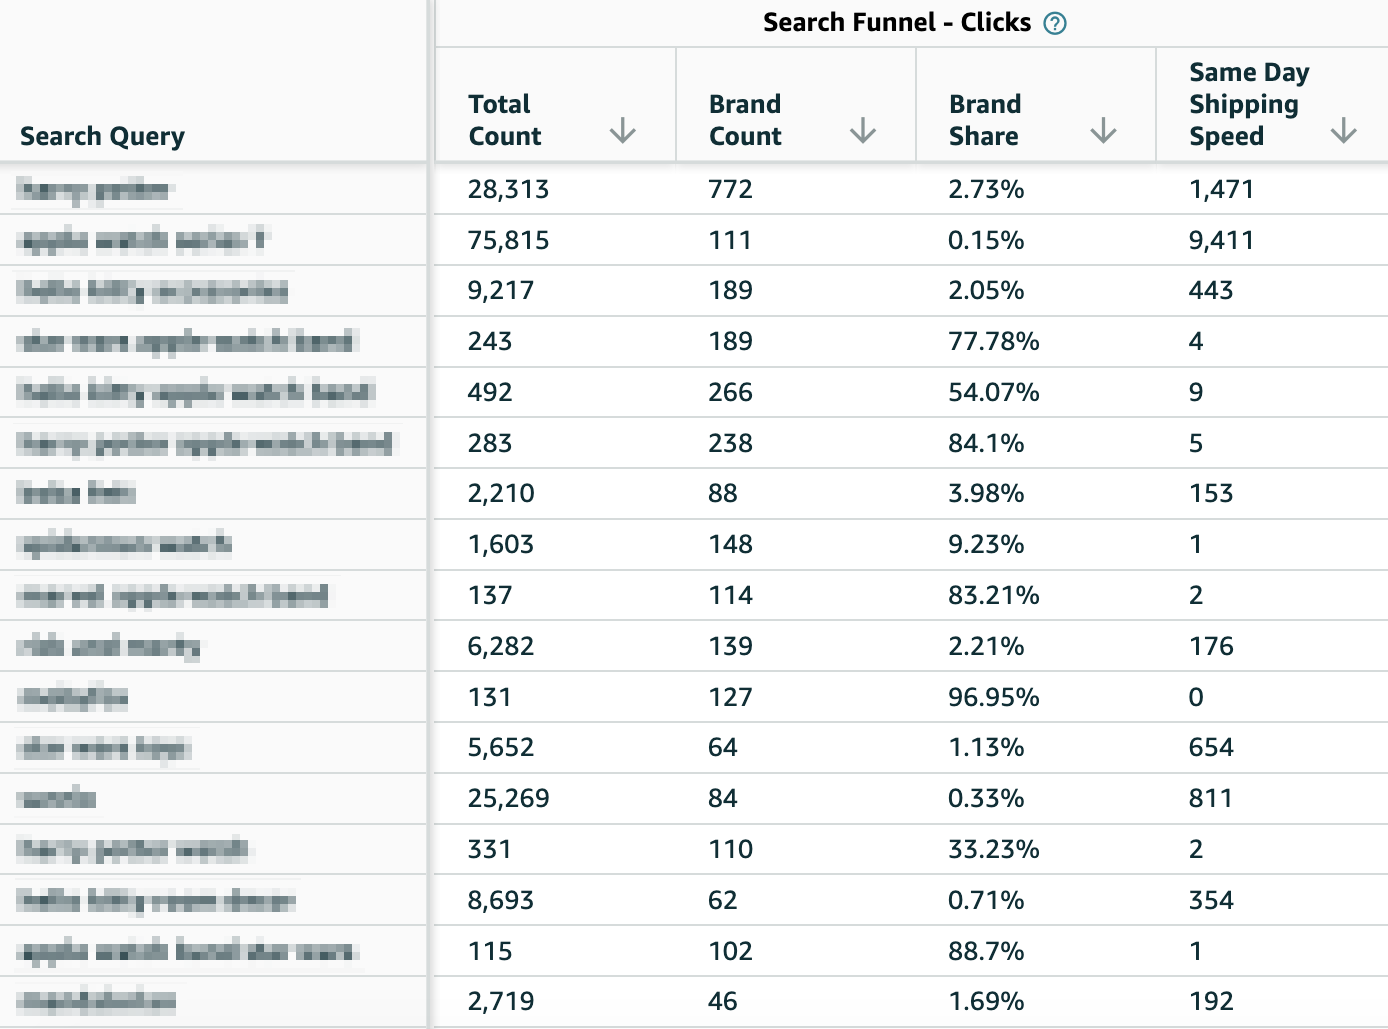 Search Funnel - clicks Data